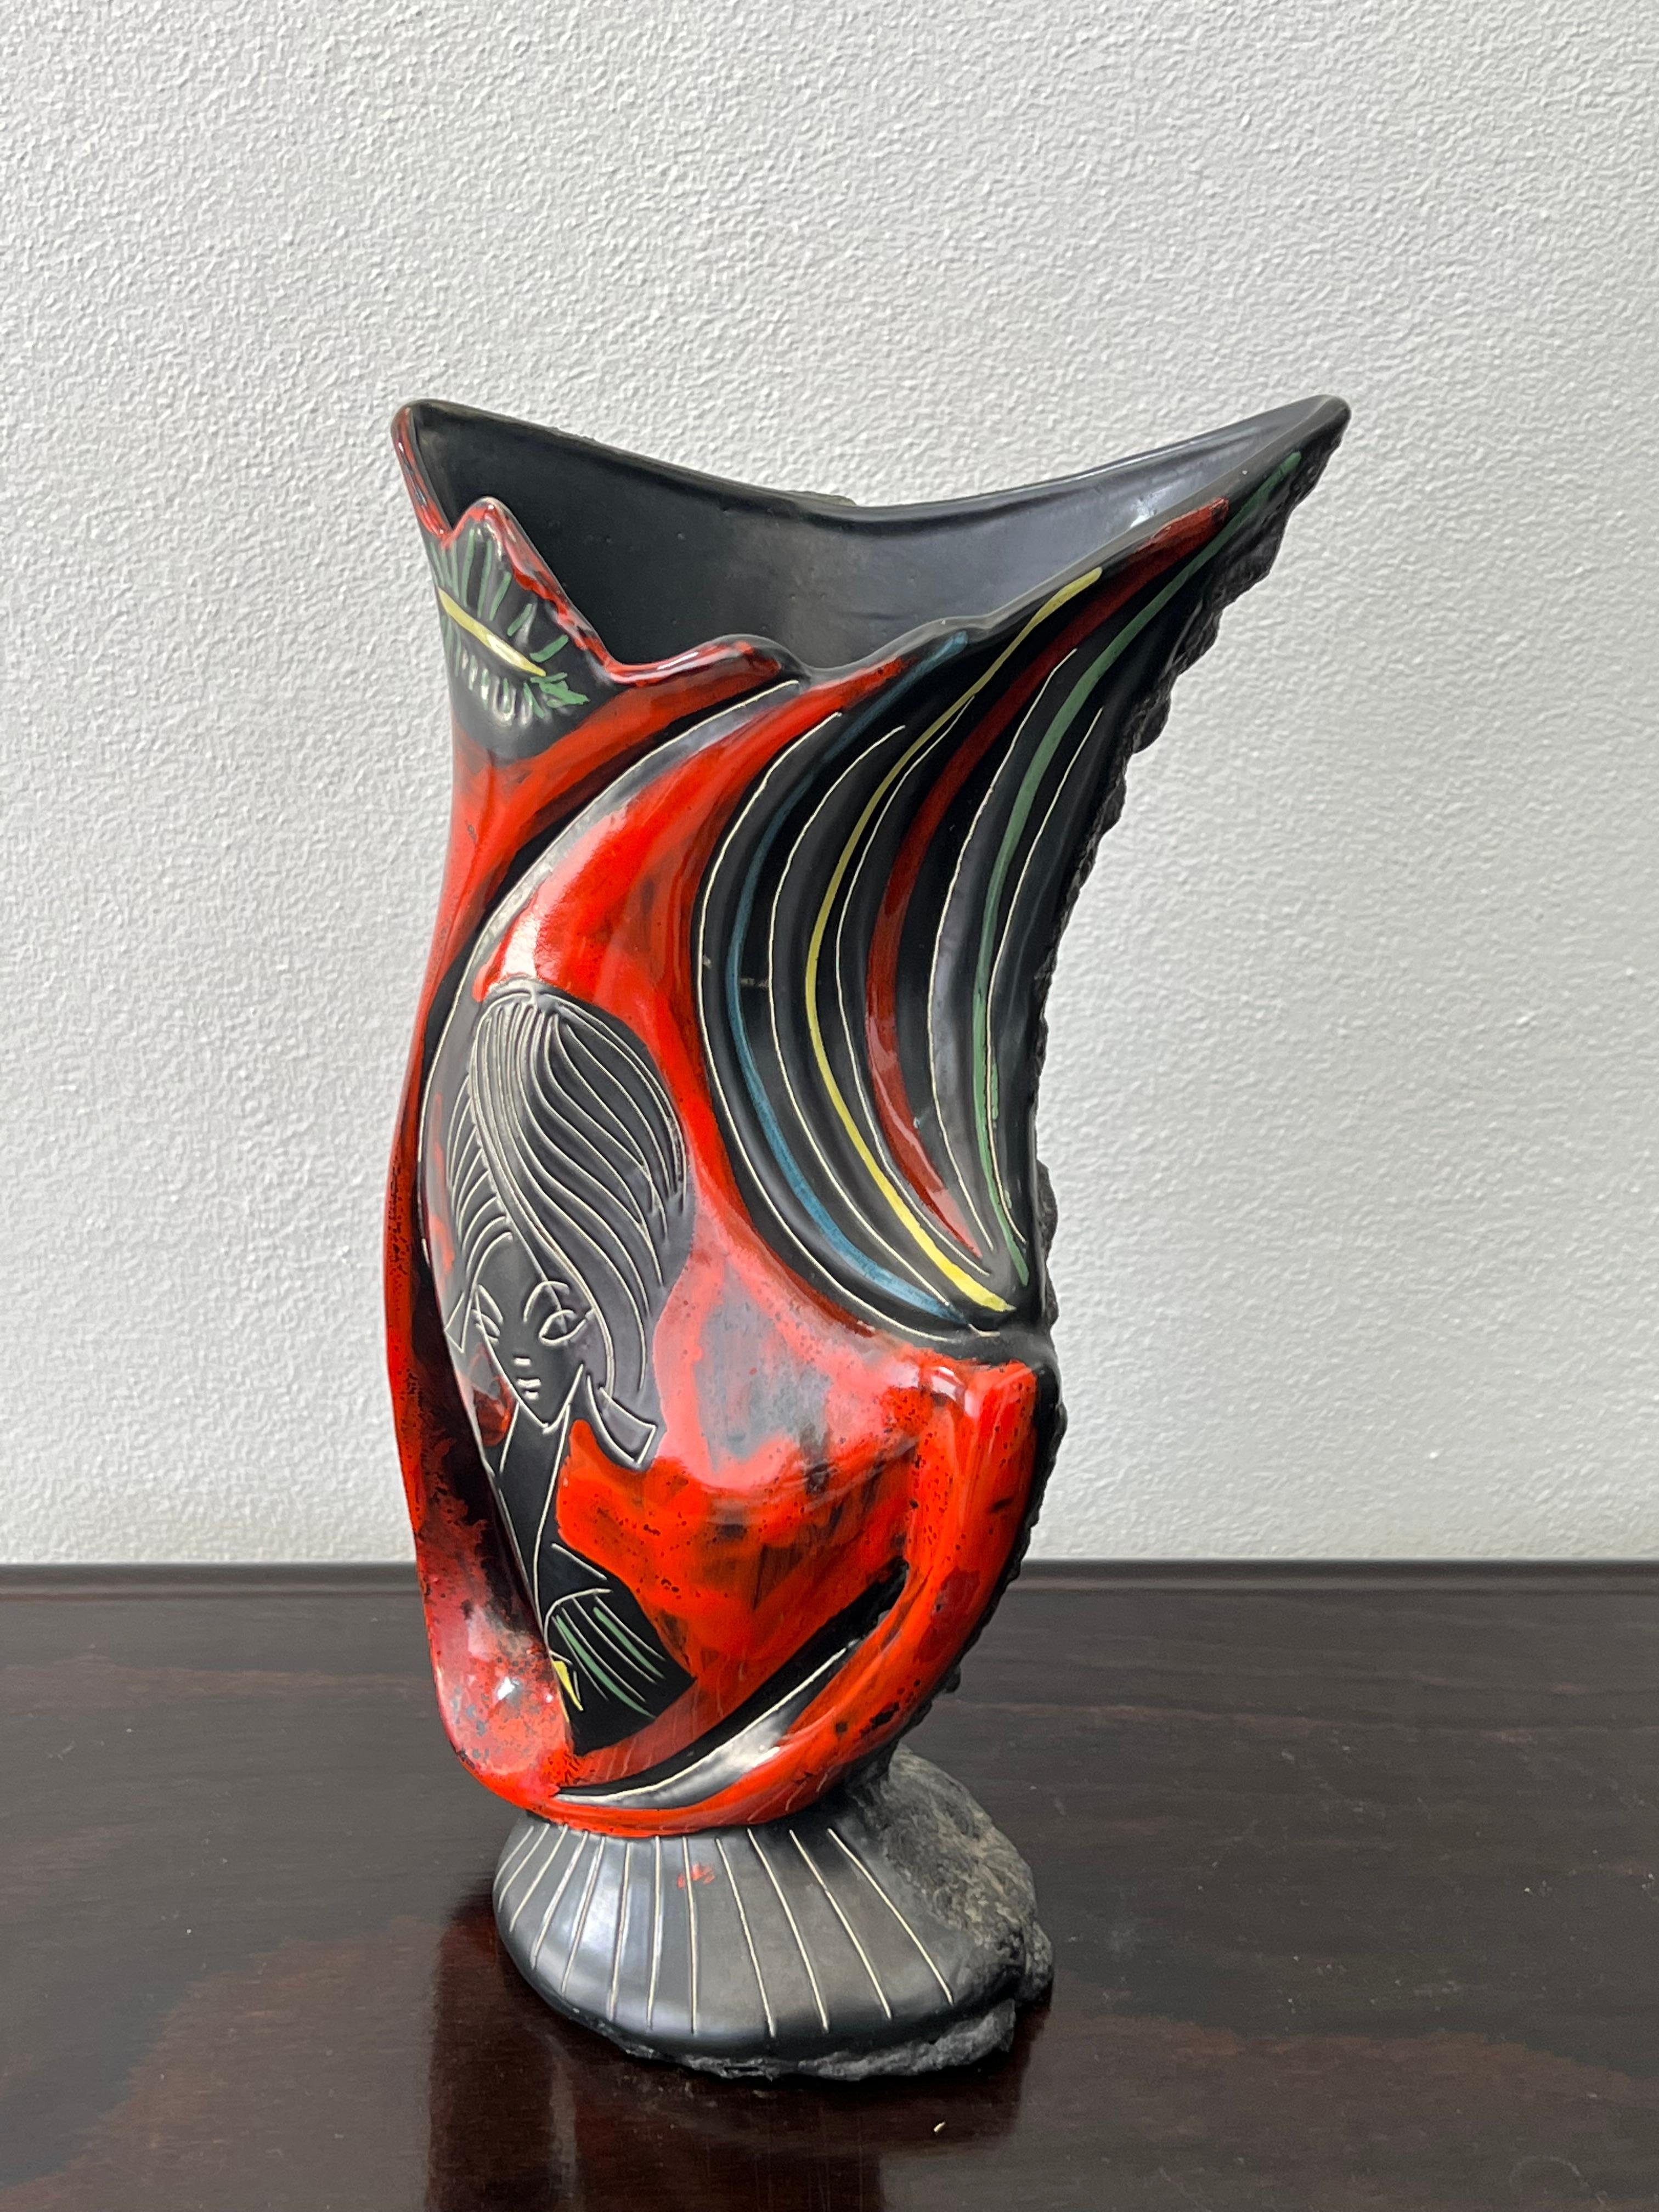 Wunderschöne italienische Lava-Vase von Augusto Giulianelli für San-Marino, 1950. Vase in signiert als M6 Giulianelli, eine Seite ist glasiert Keramik die andere ist Keramik mit erstaunlichen Lava Arbeit.